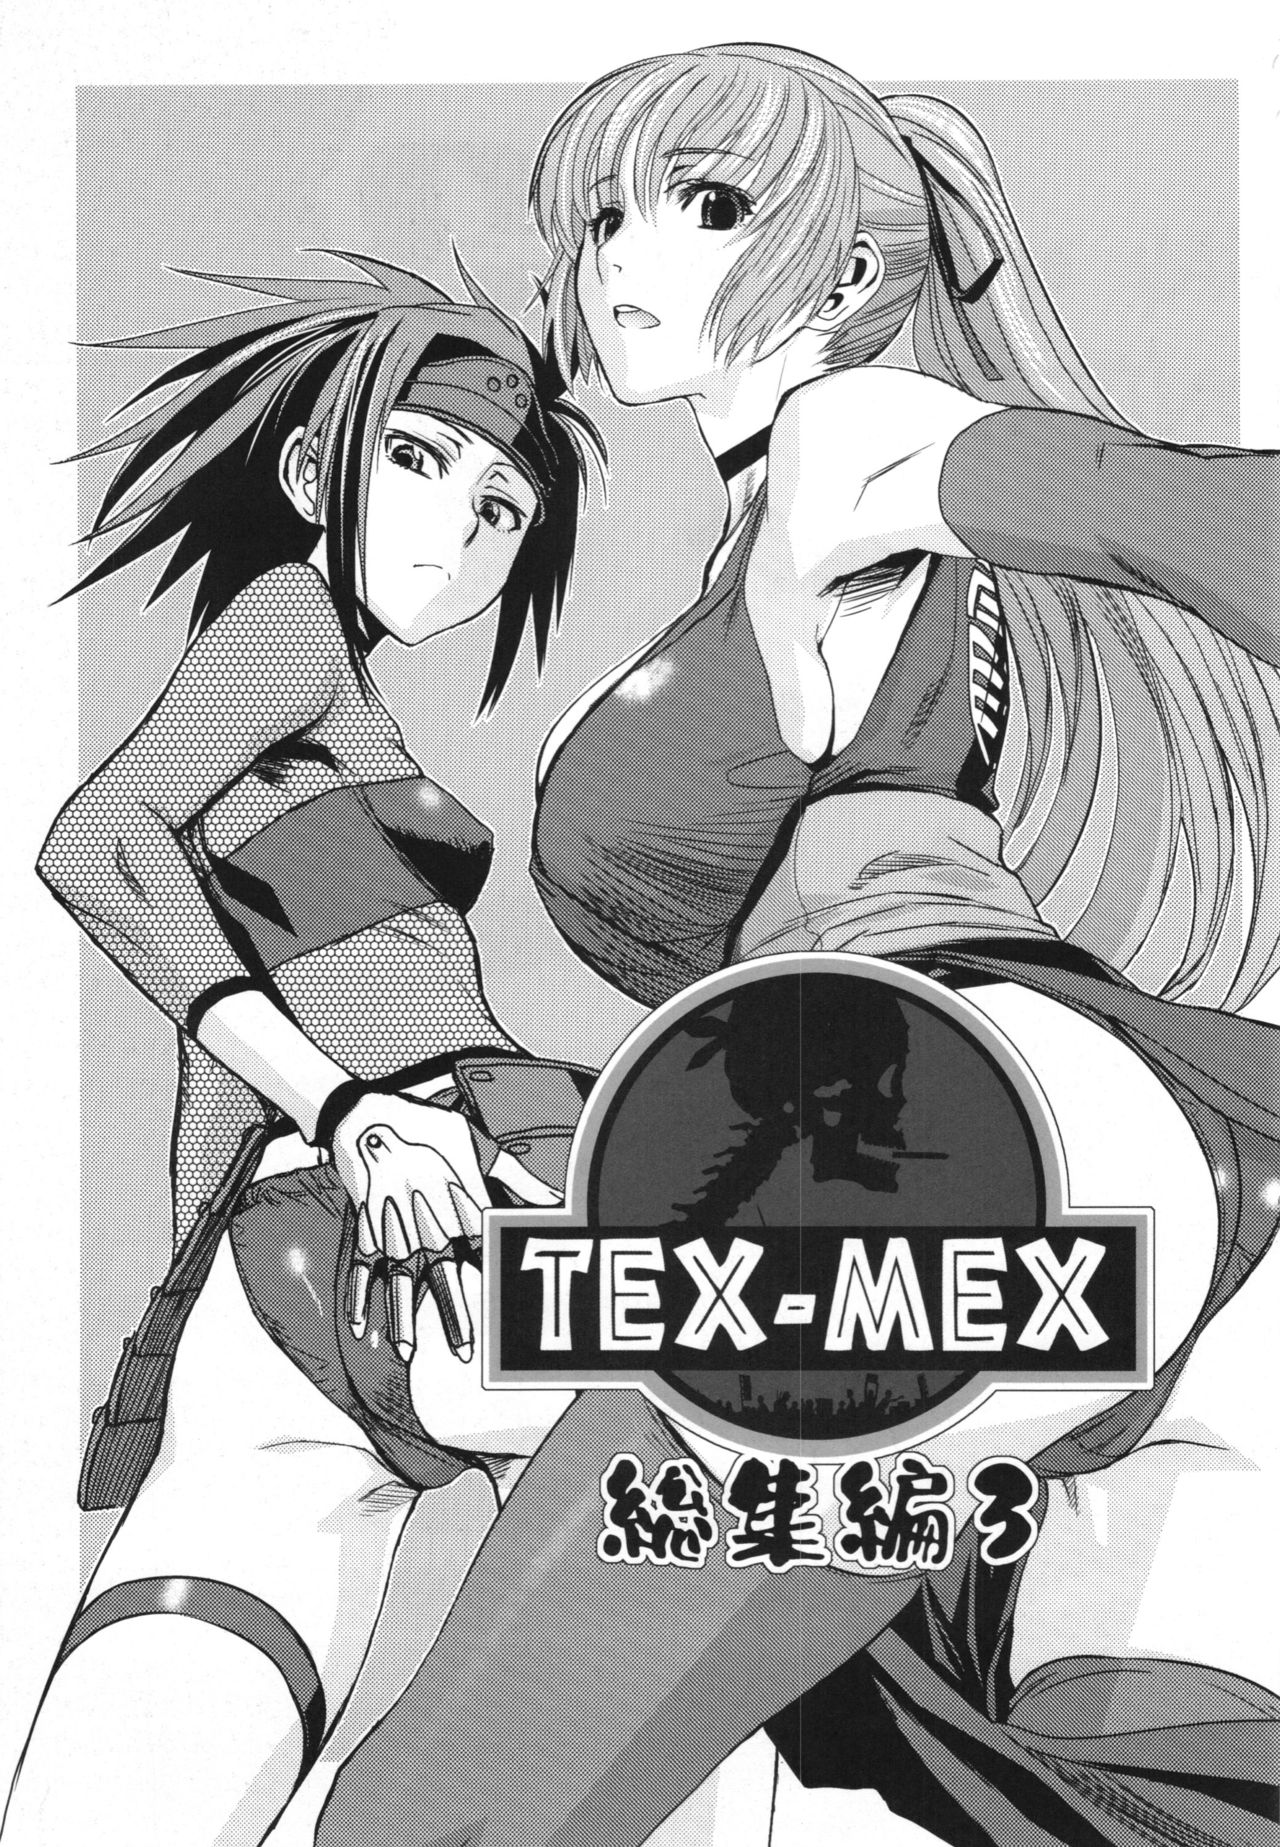 (C88) [TEX-MEX (れっどぶる)] WAY OF TEX-MEX 総集編3 + おまけ本 (よろず)